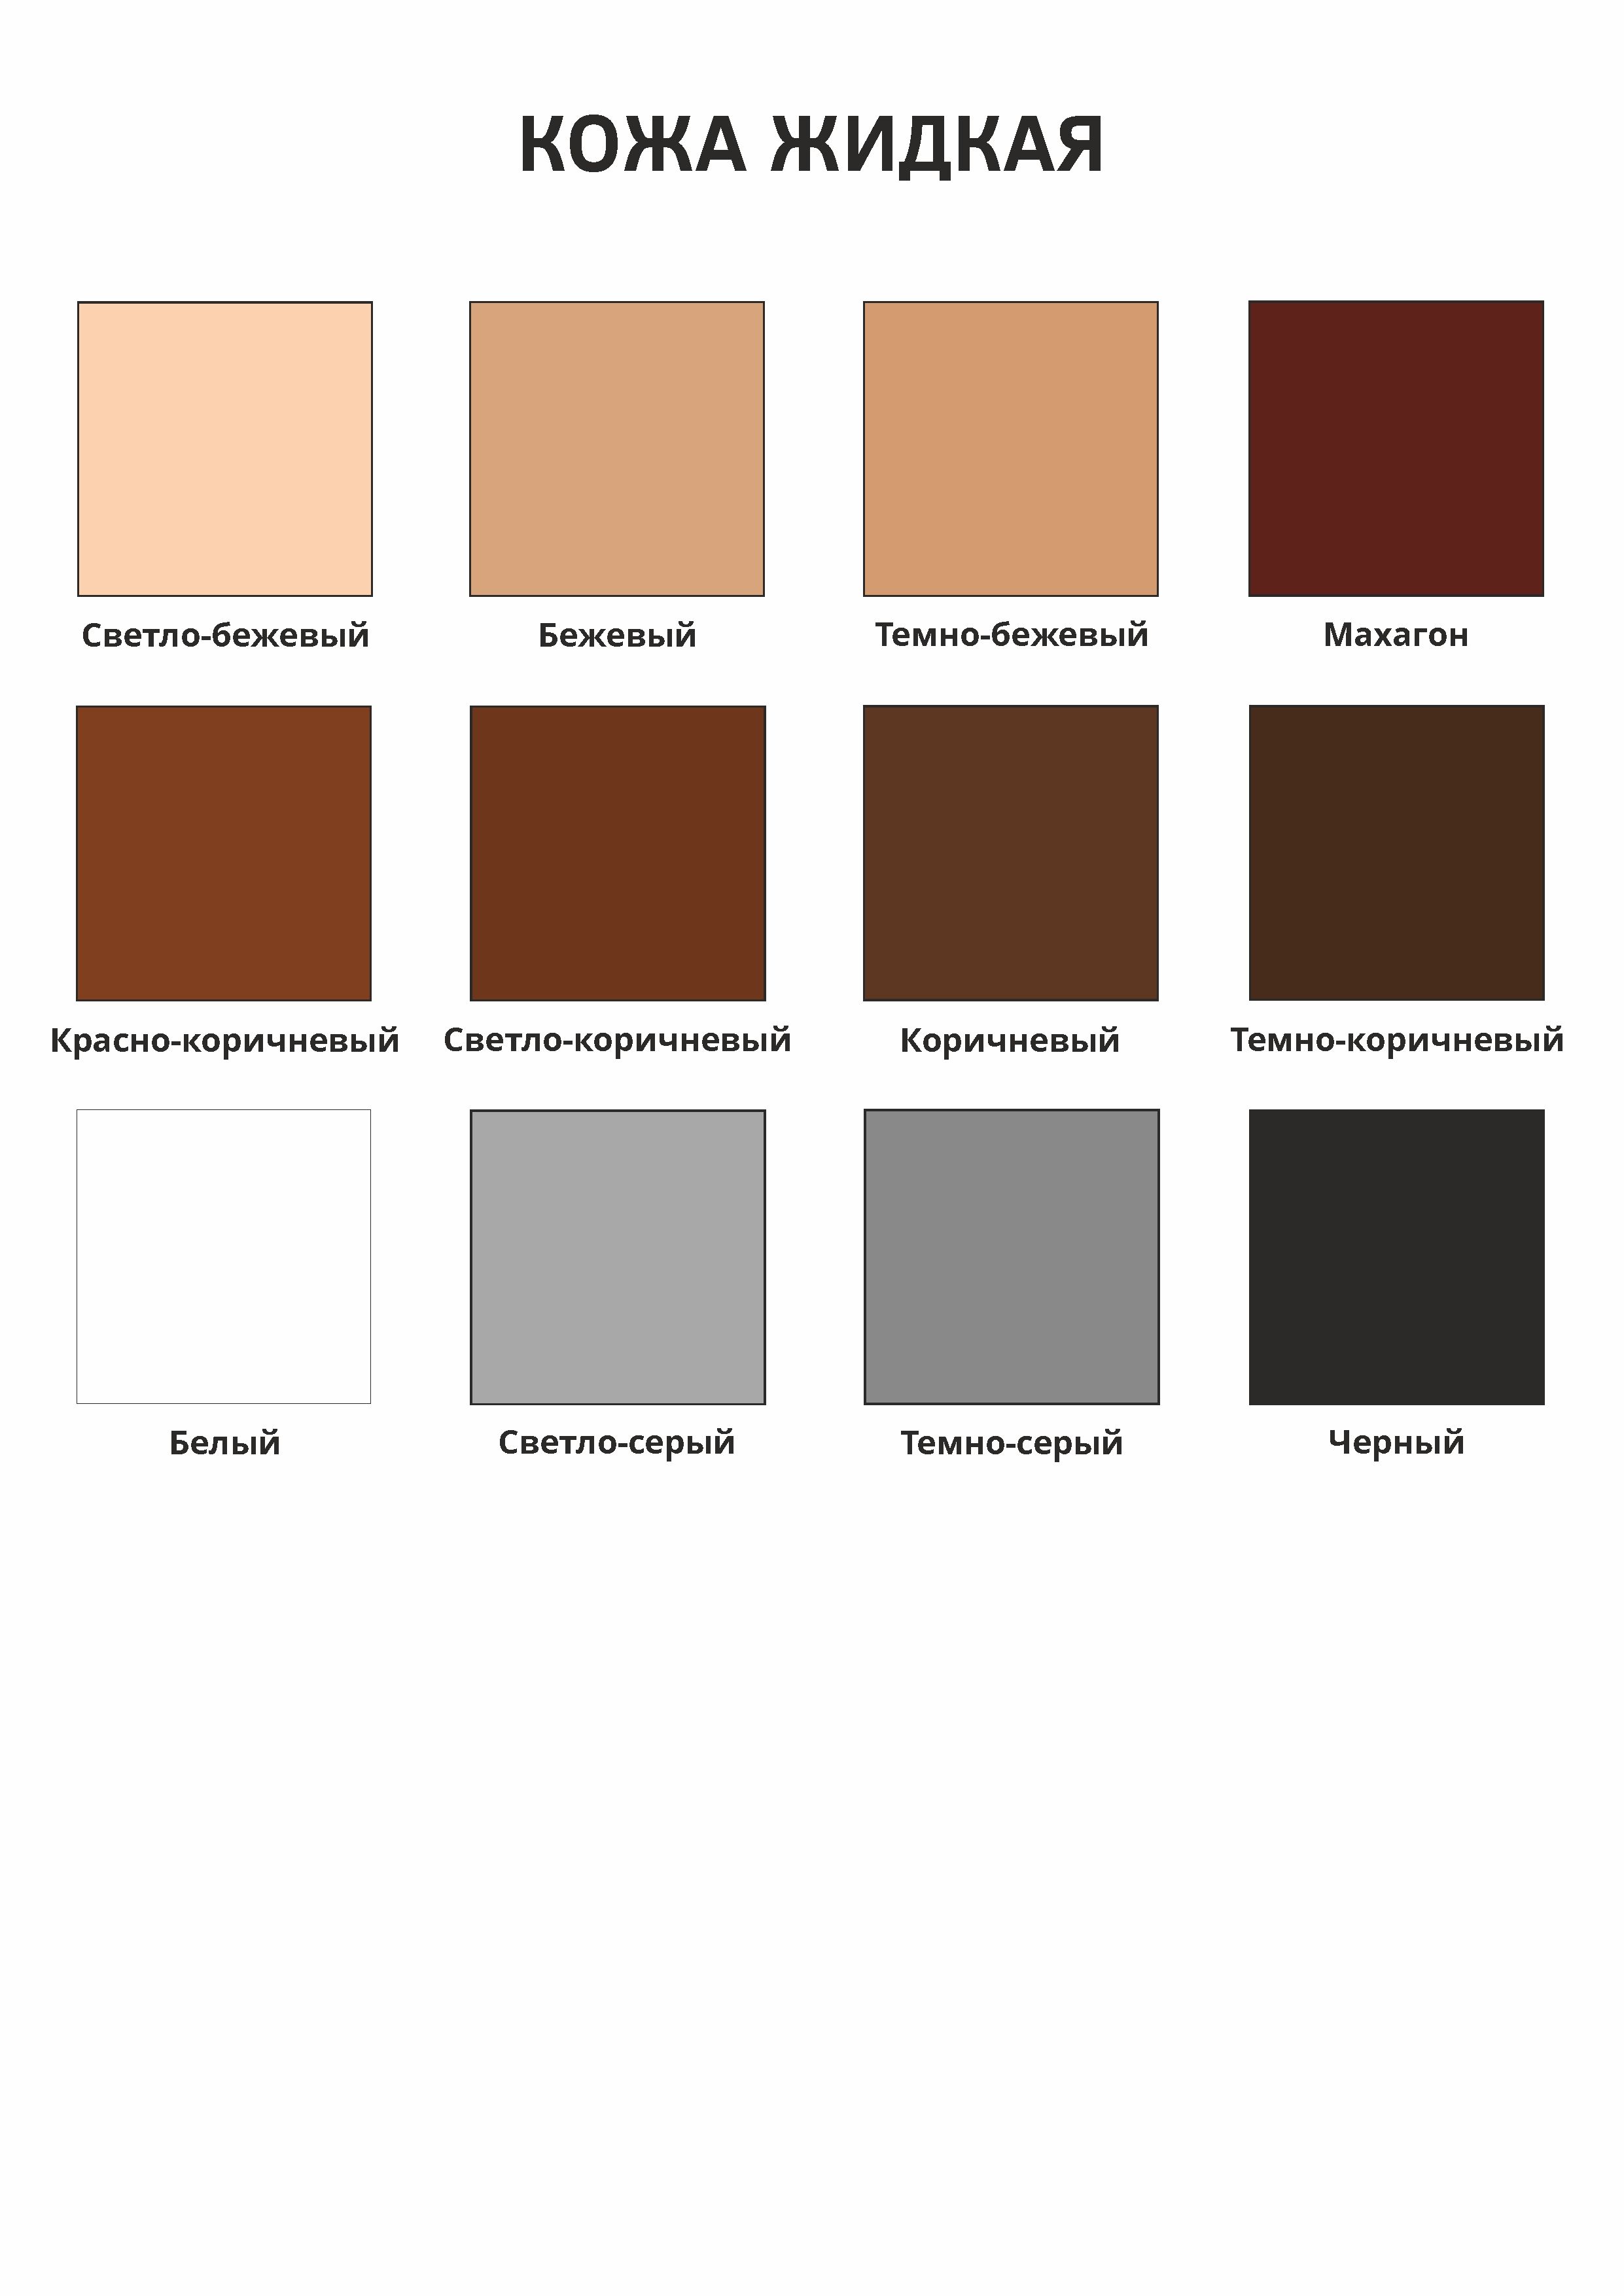 Жидкая кожа - коричневый (Н) Новатор 12655 Жидкая кожа - коричневый (Н) - фото 3